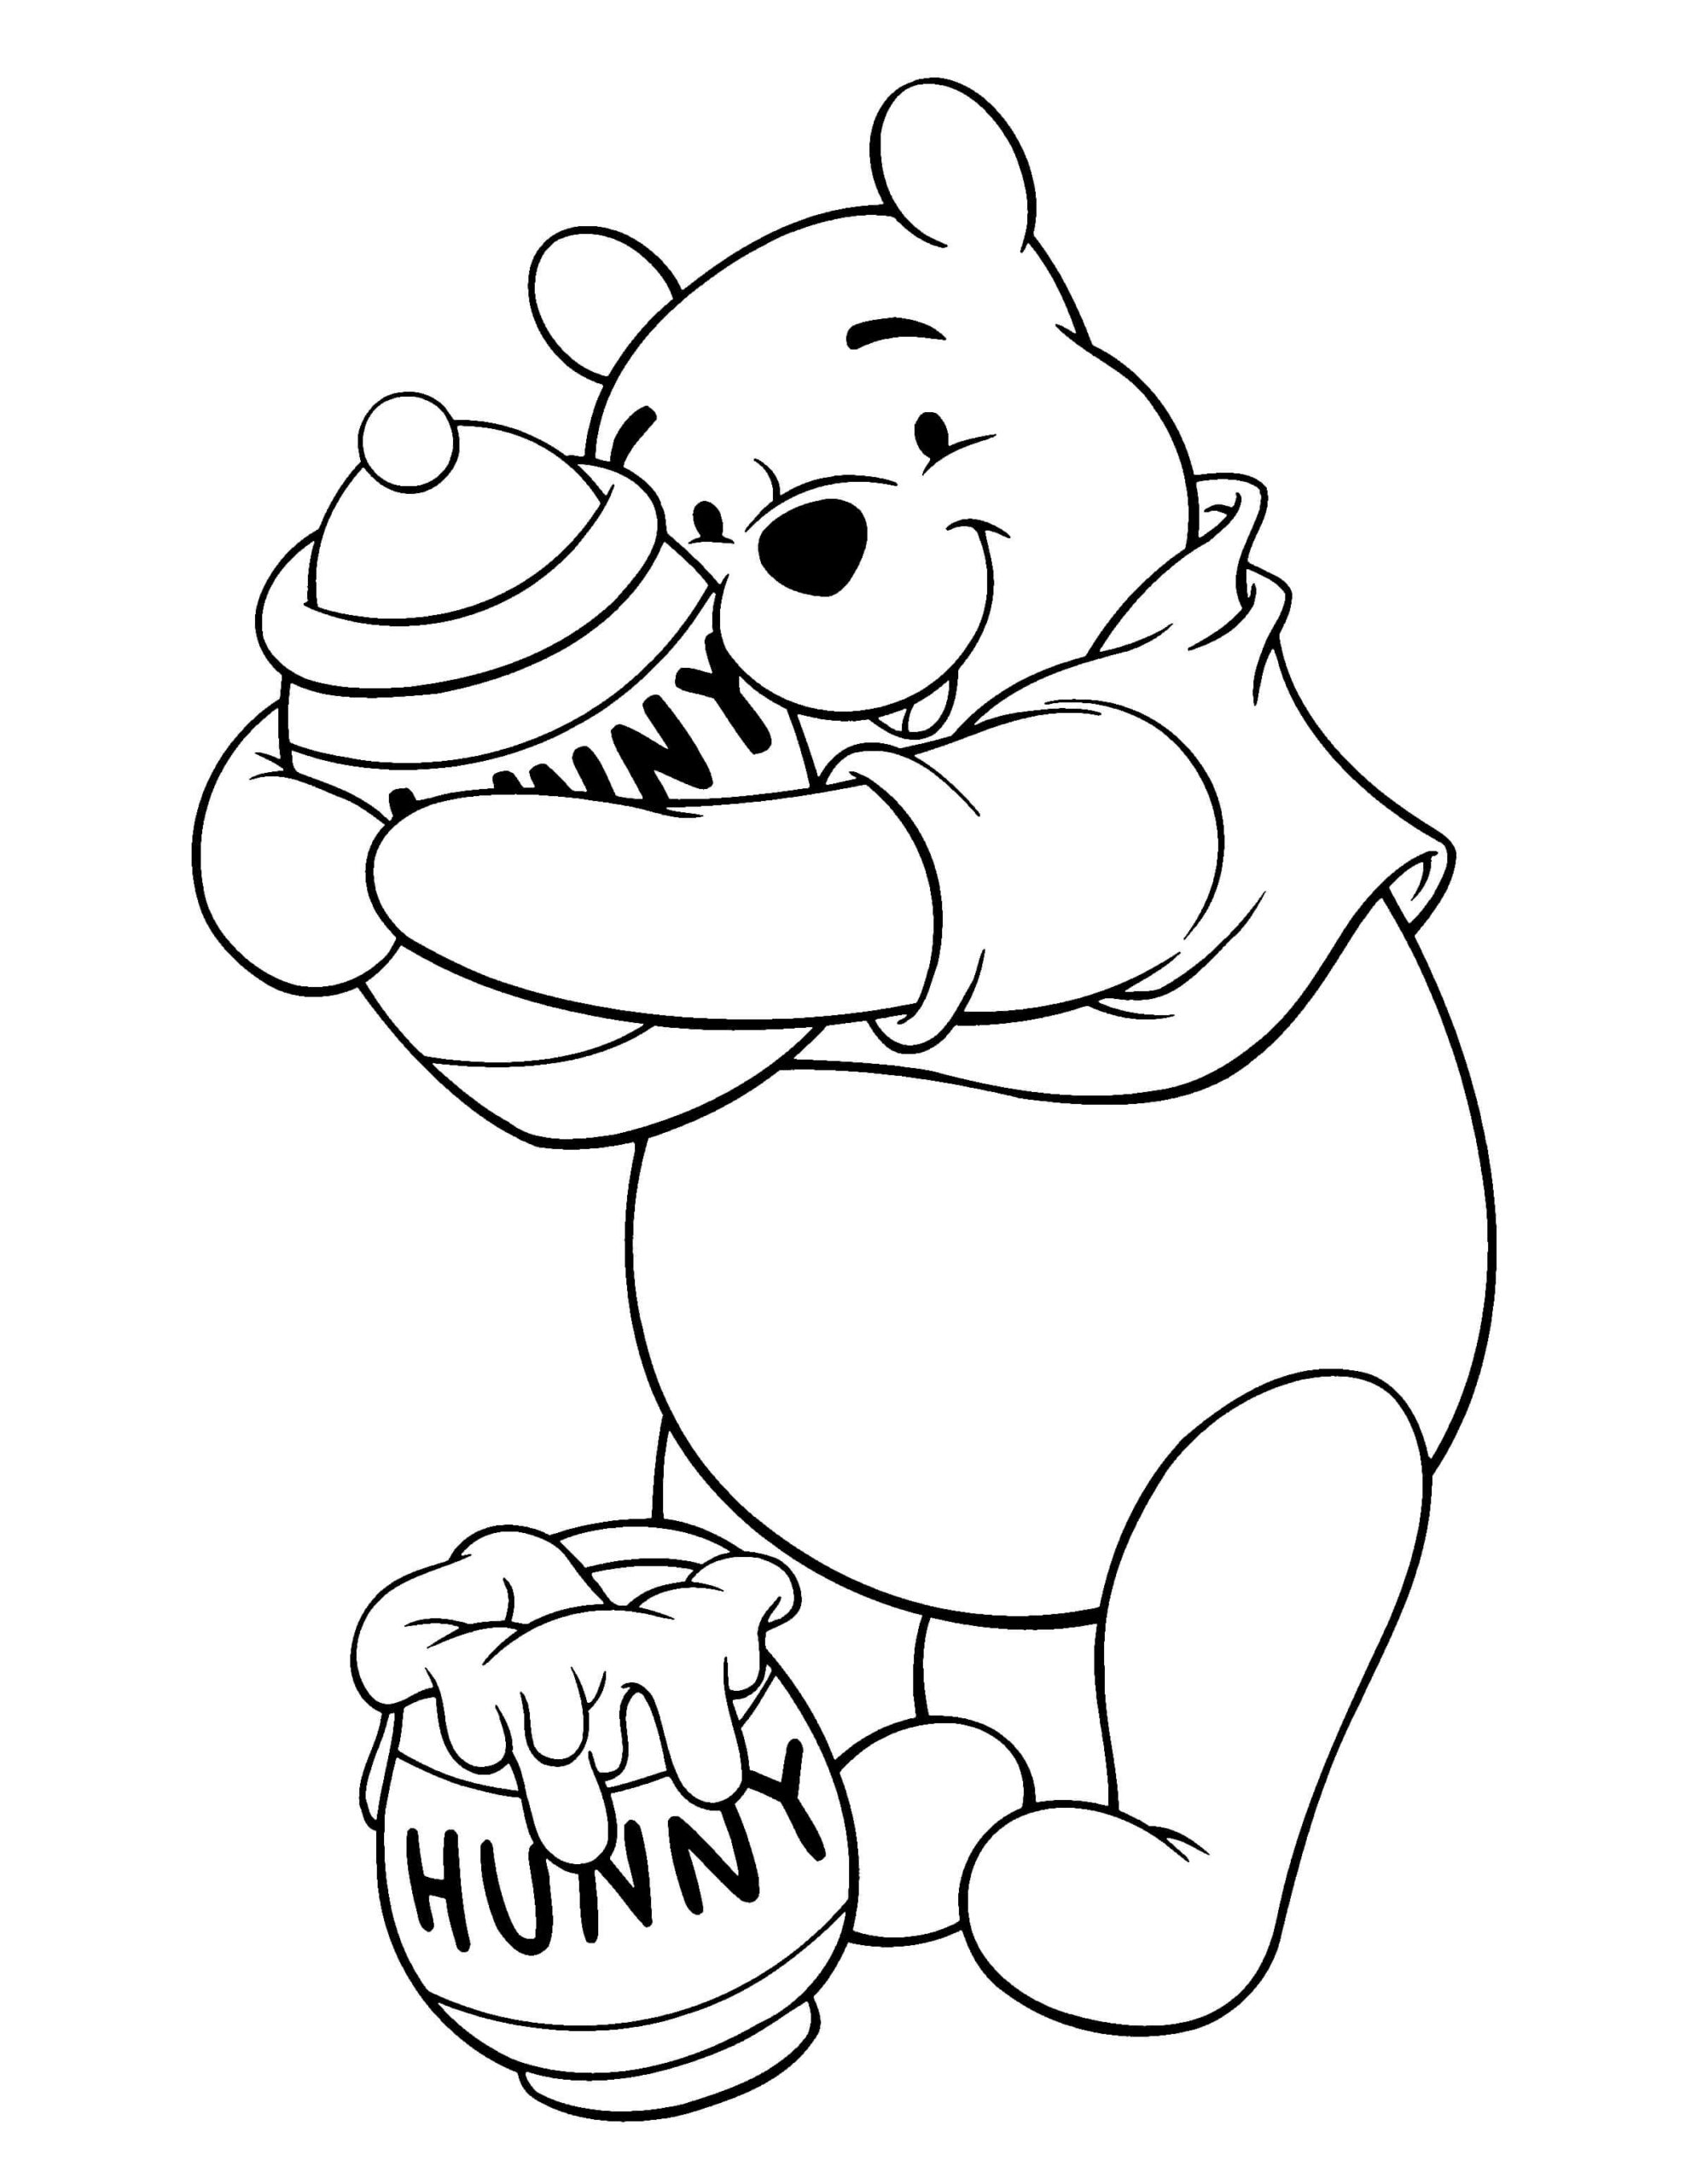 Dibujos de Winnie de Pooh y dos Tarros de Miel para colorear